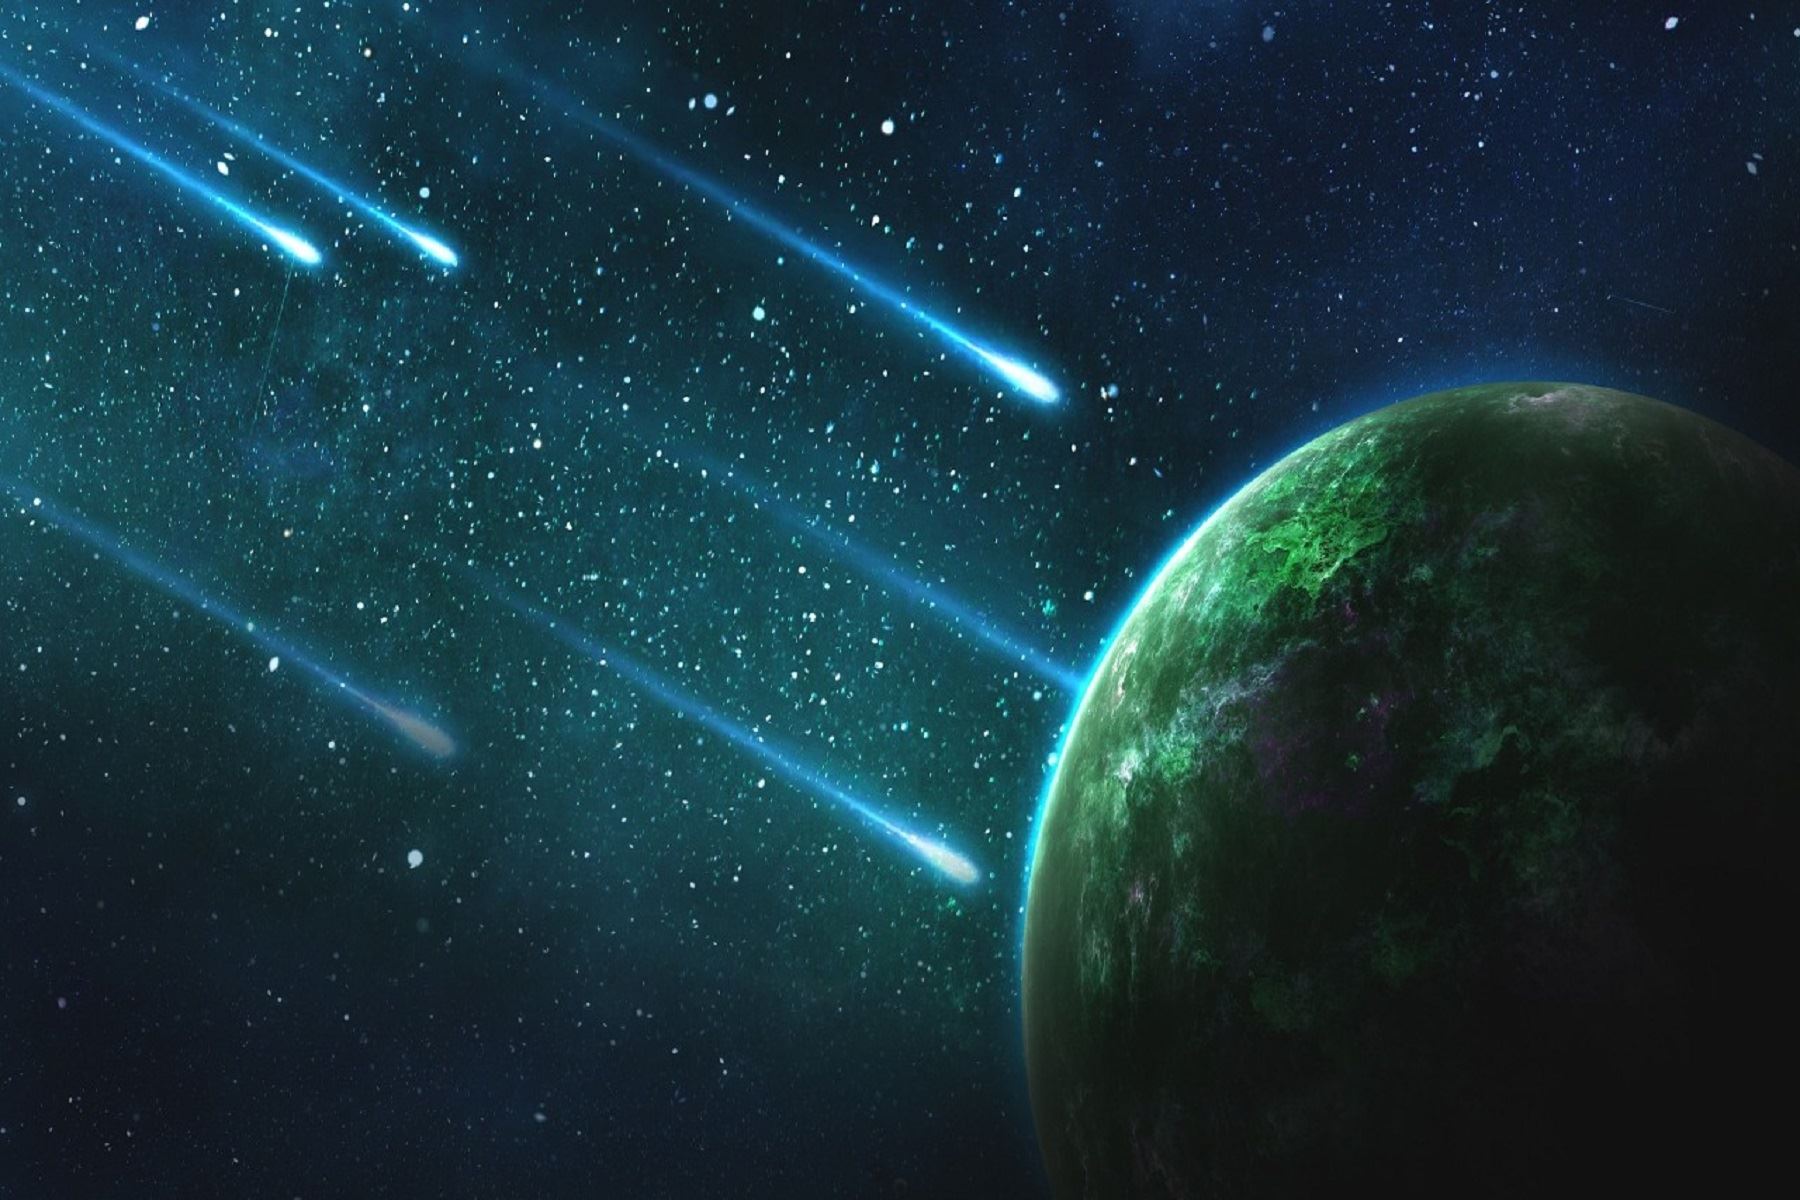 Asteroides con nombres peruanos y los más resaltantes son:  Machupicchu, Qoyllurwasi, Maríareiche, Inca, Lima, Cusco y recientemente renombró a dos asteroides como “Pajuelo” y “Erickmeza.